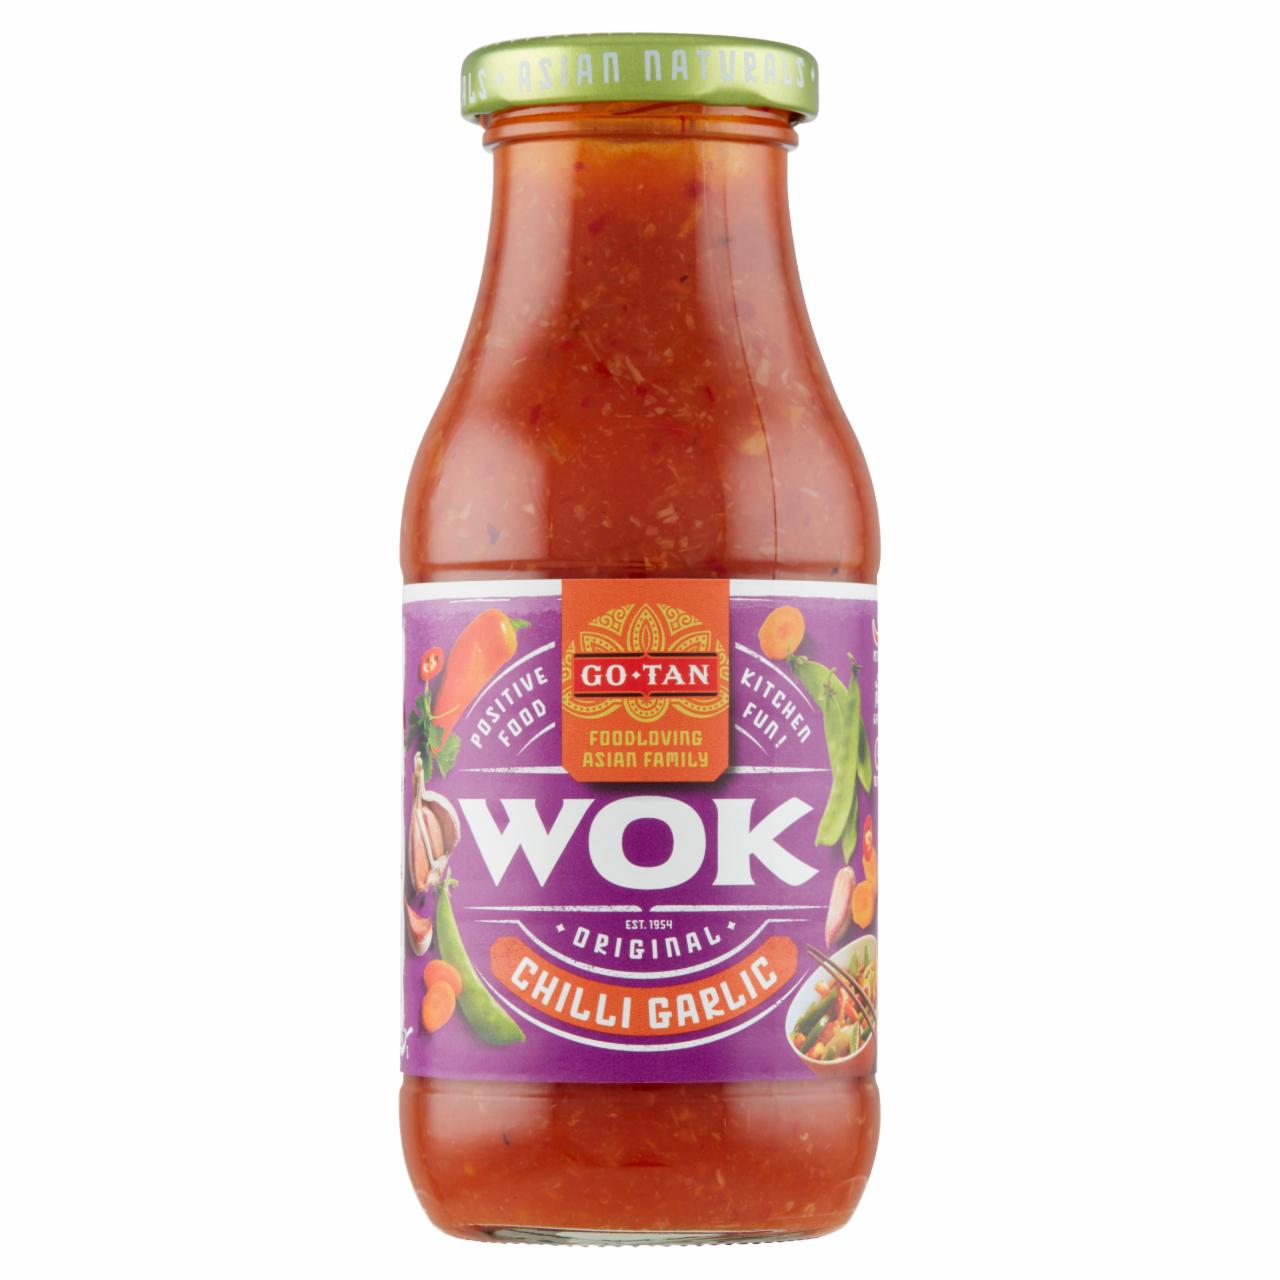 Képek - Go-Tan Wok chilli garlic szósz 240 ml